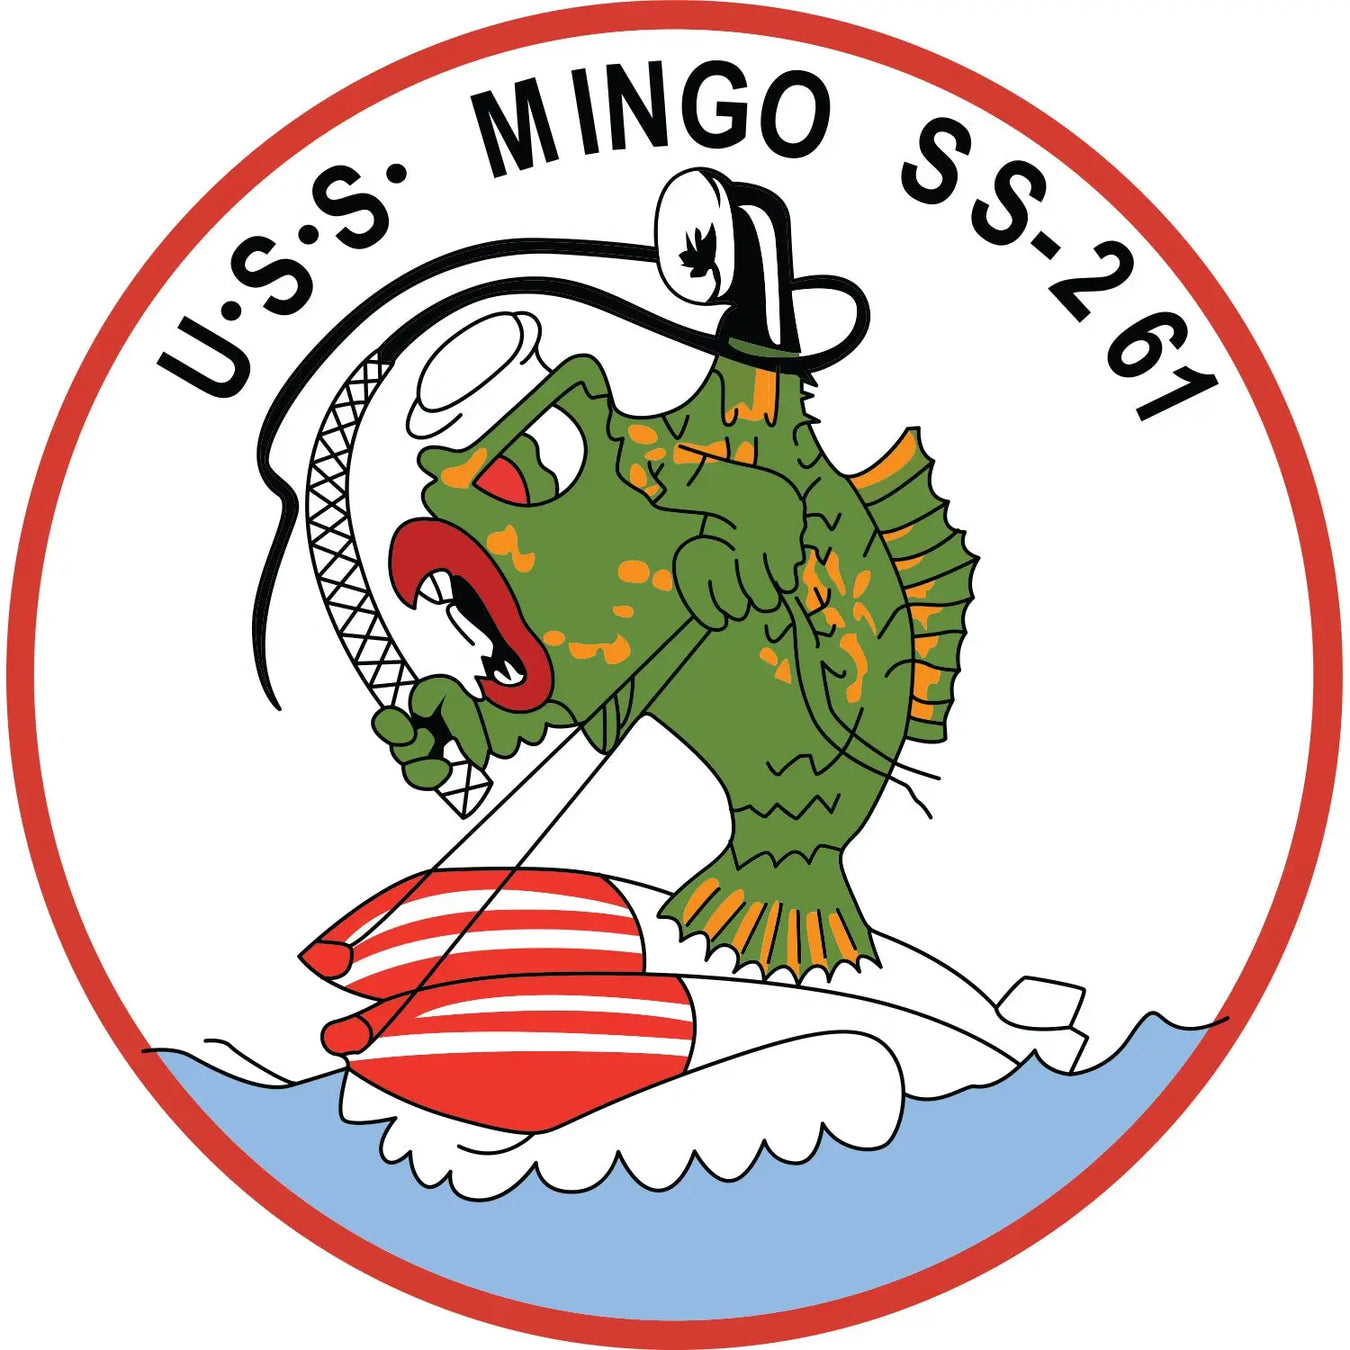 USS Mingo (SS-261)